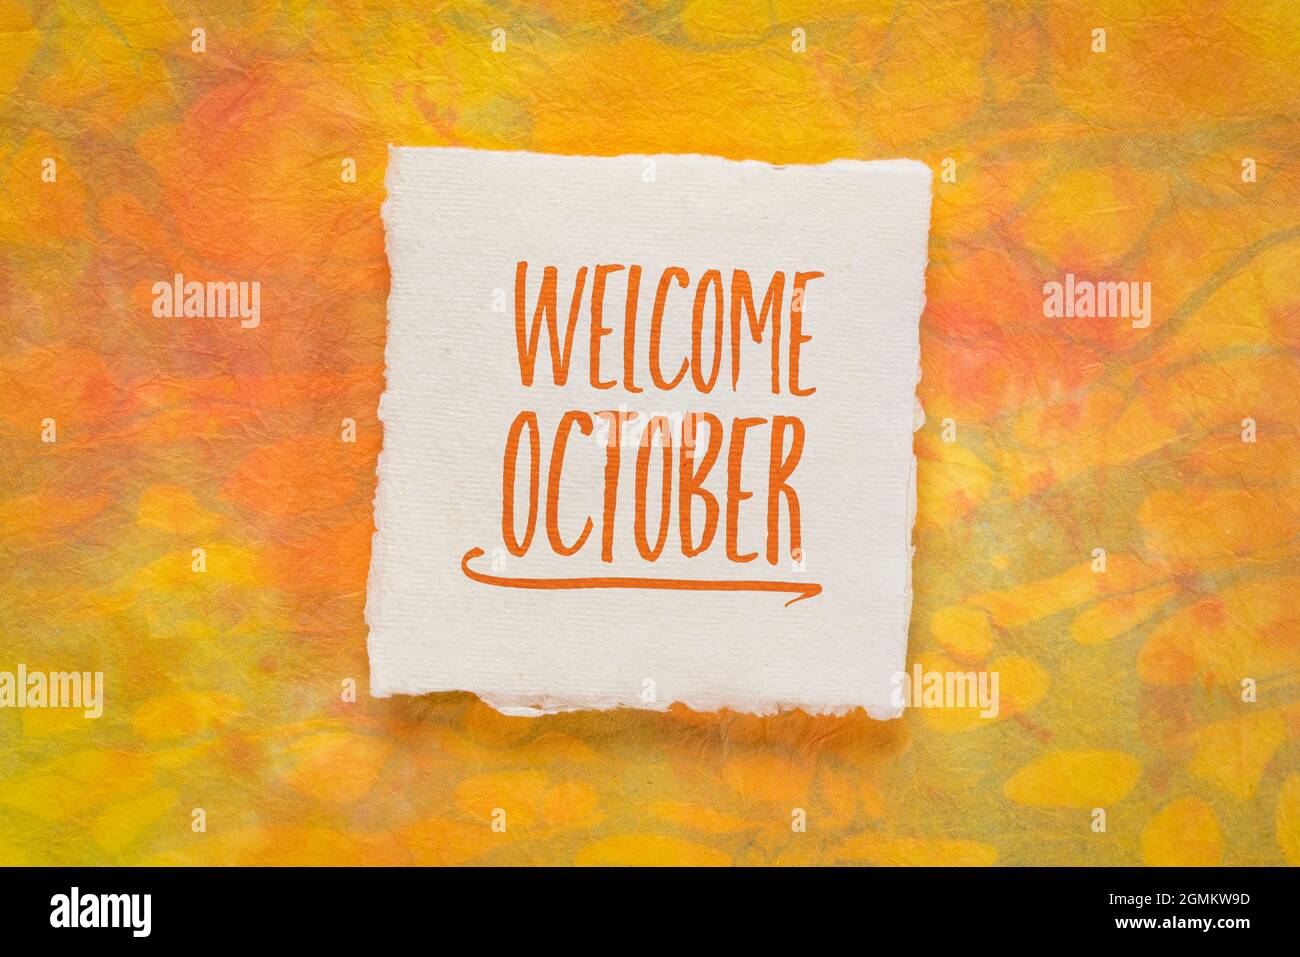 Begrüßungsgruß im Oktober - Handschrift auf einem handgefertigten Stoffpapier gegen Marmorpapier, Kalenderkonzept Stockfoto